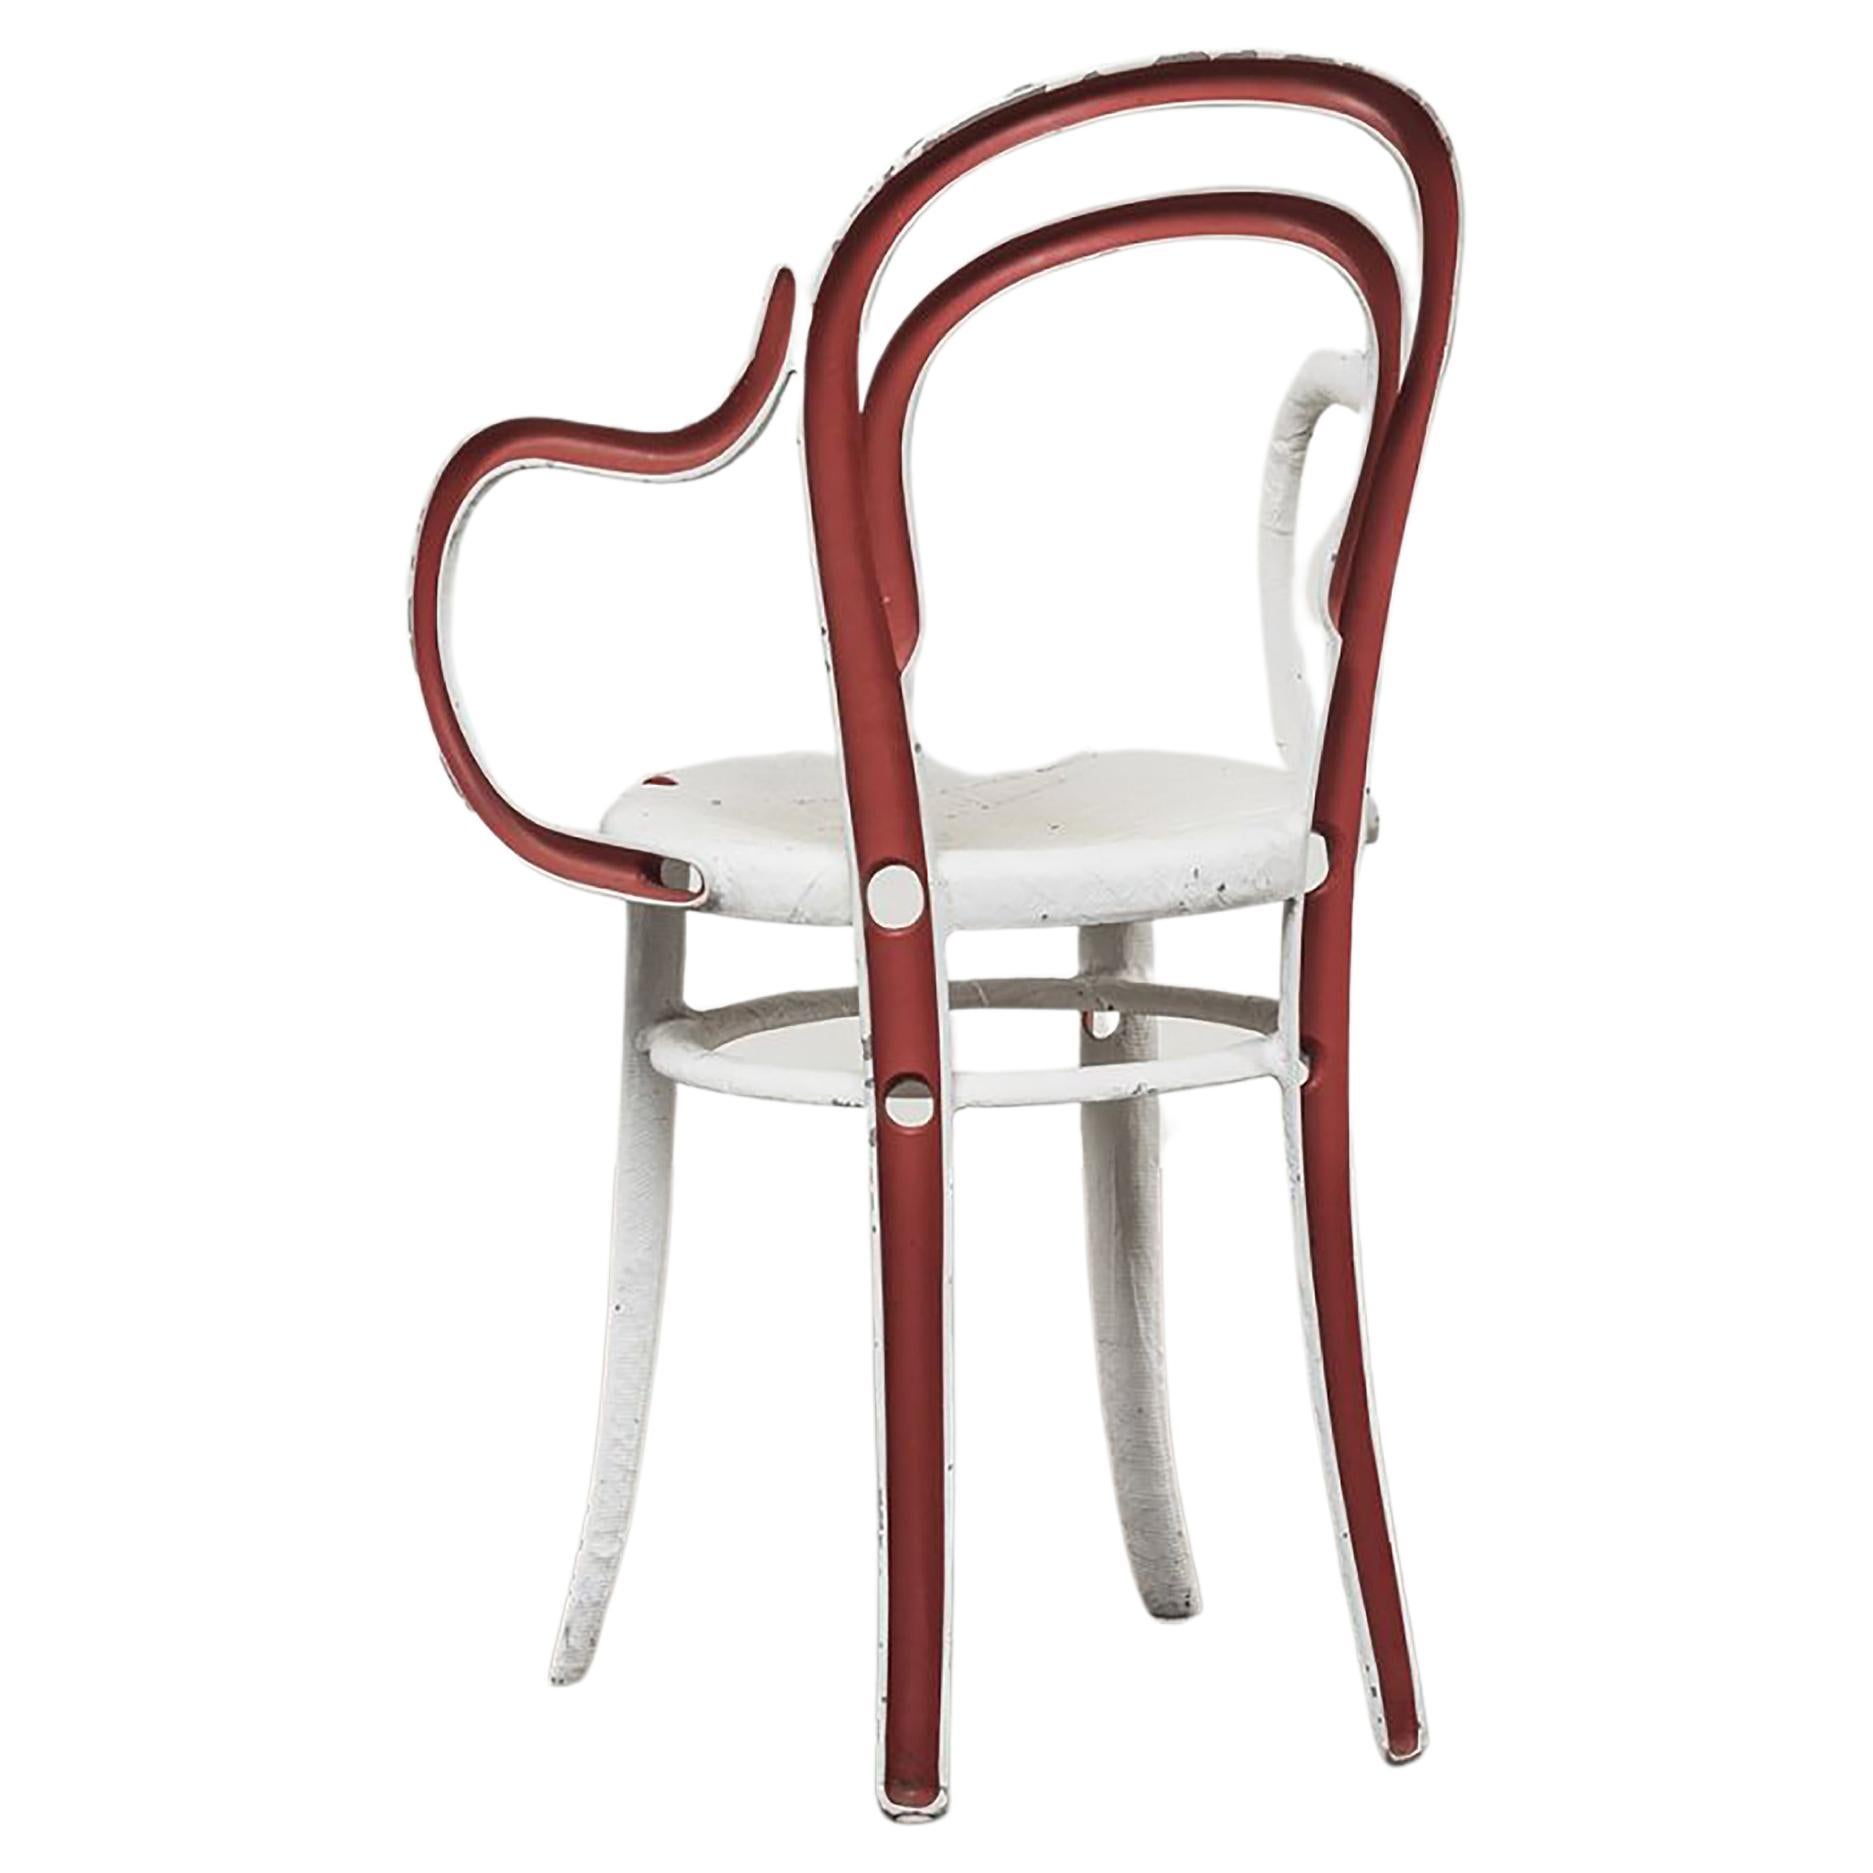 Andrea Salvetti Dilmos Indoor Outdoor Chair Cast Aluminium Textured Pattern